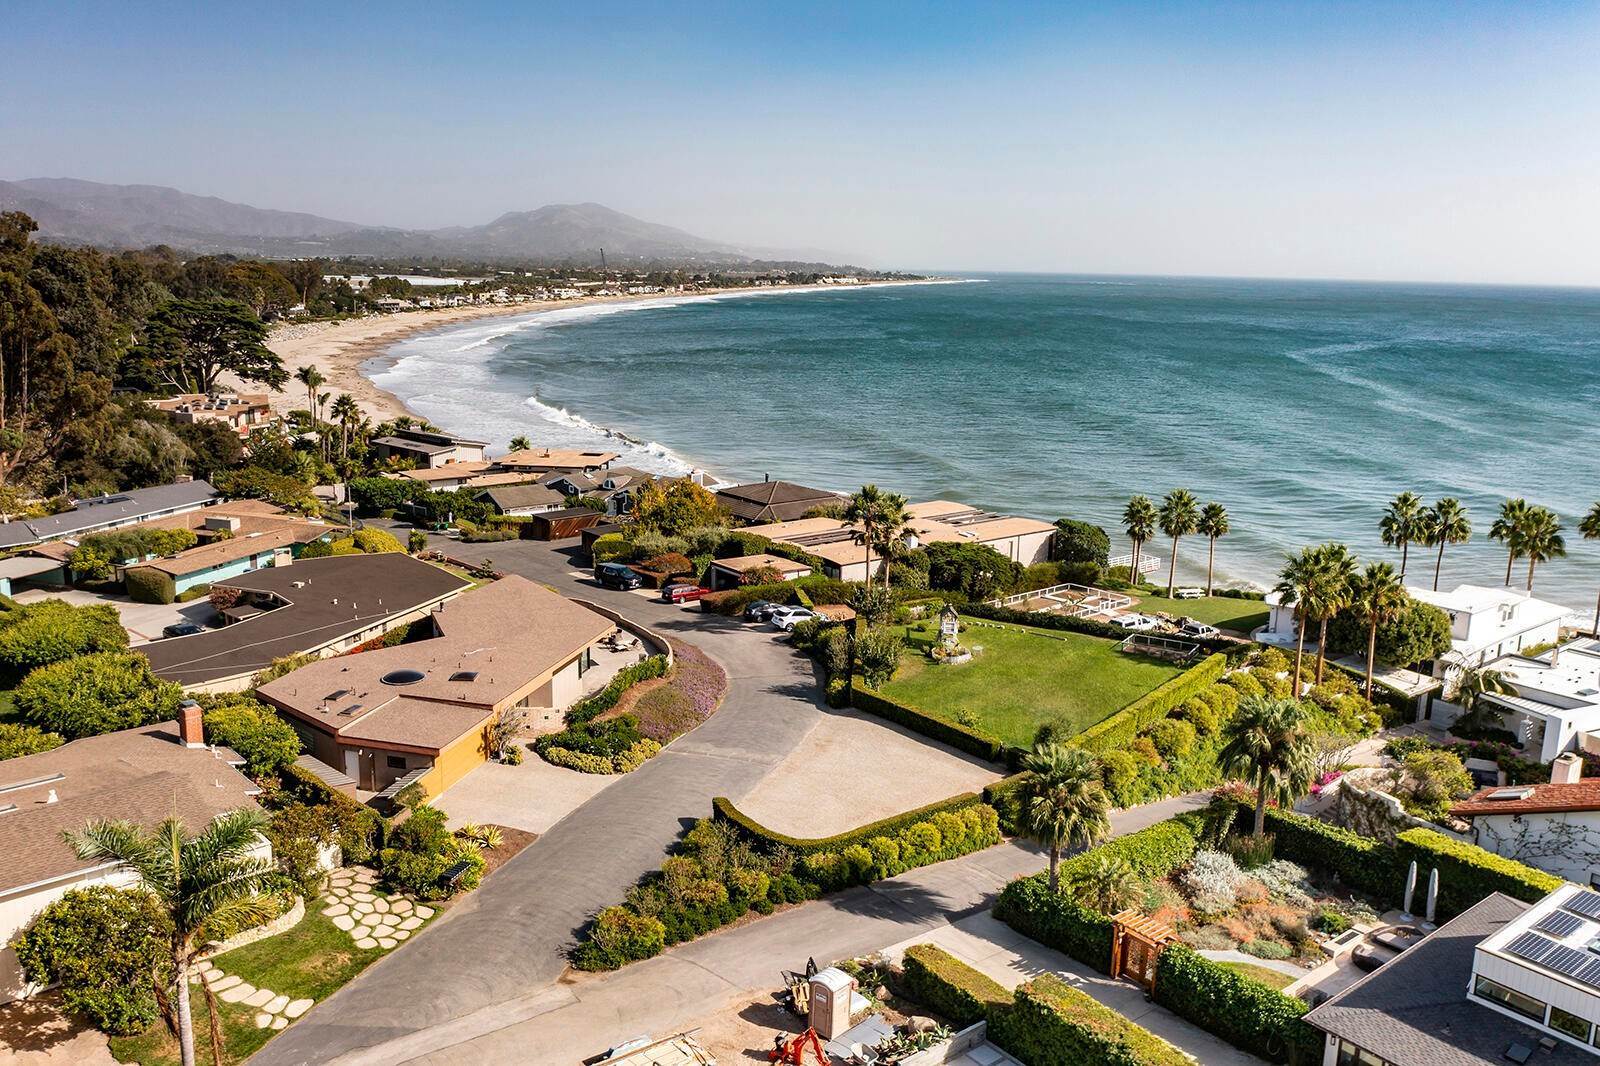 地段/土地 为 销售 在 3280 Beach Club Road 卡平特里亚, 加利福尼亚州 93013 美国